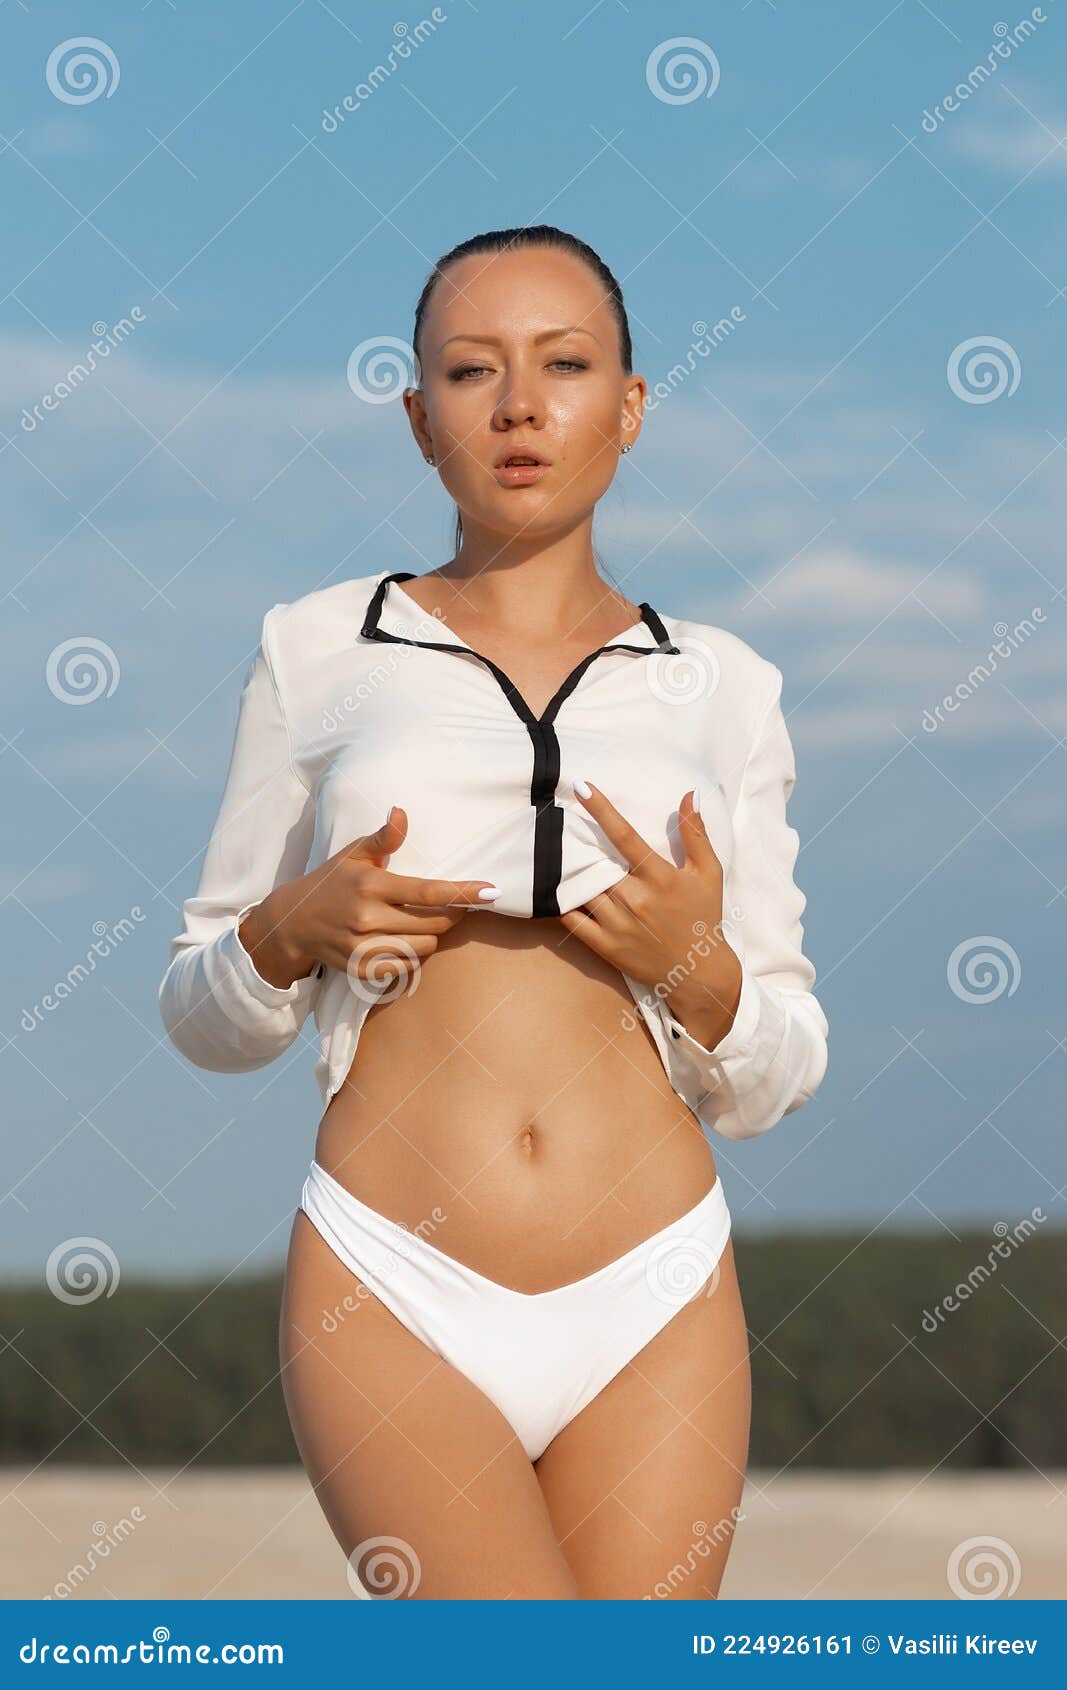 debra kinsey add photo taking off bikini top